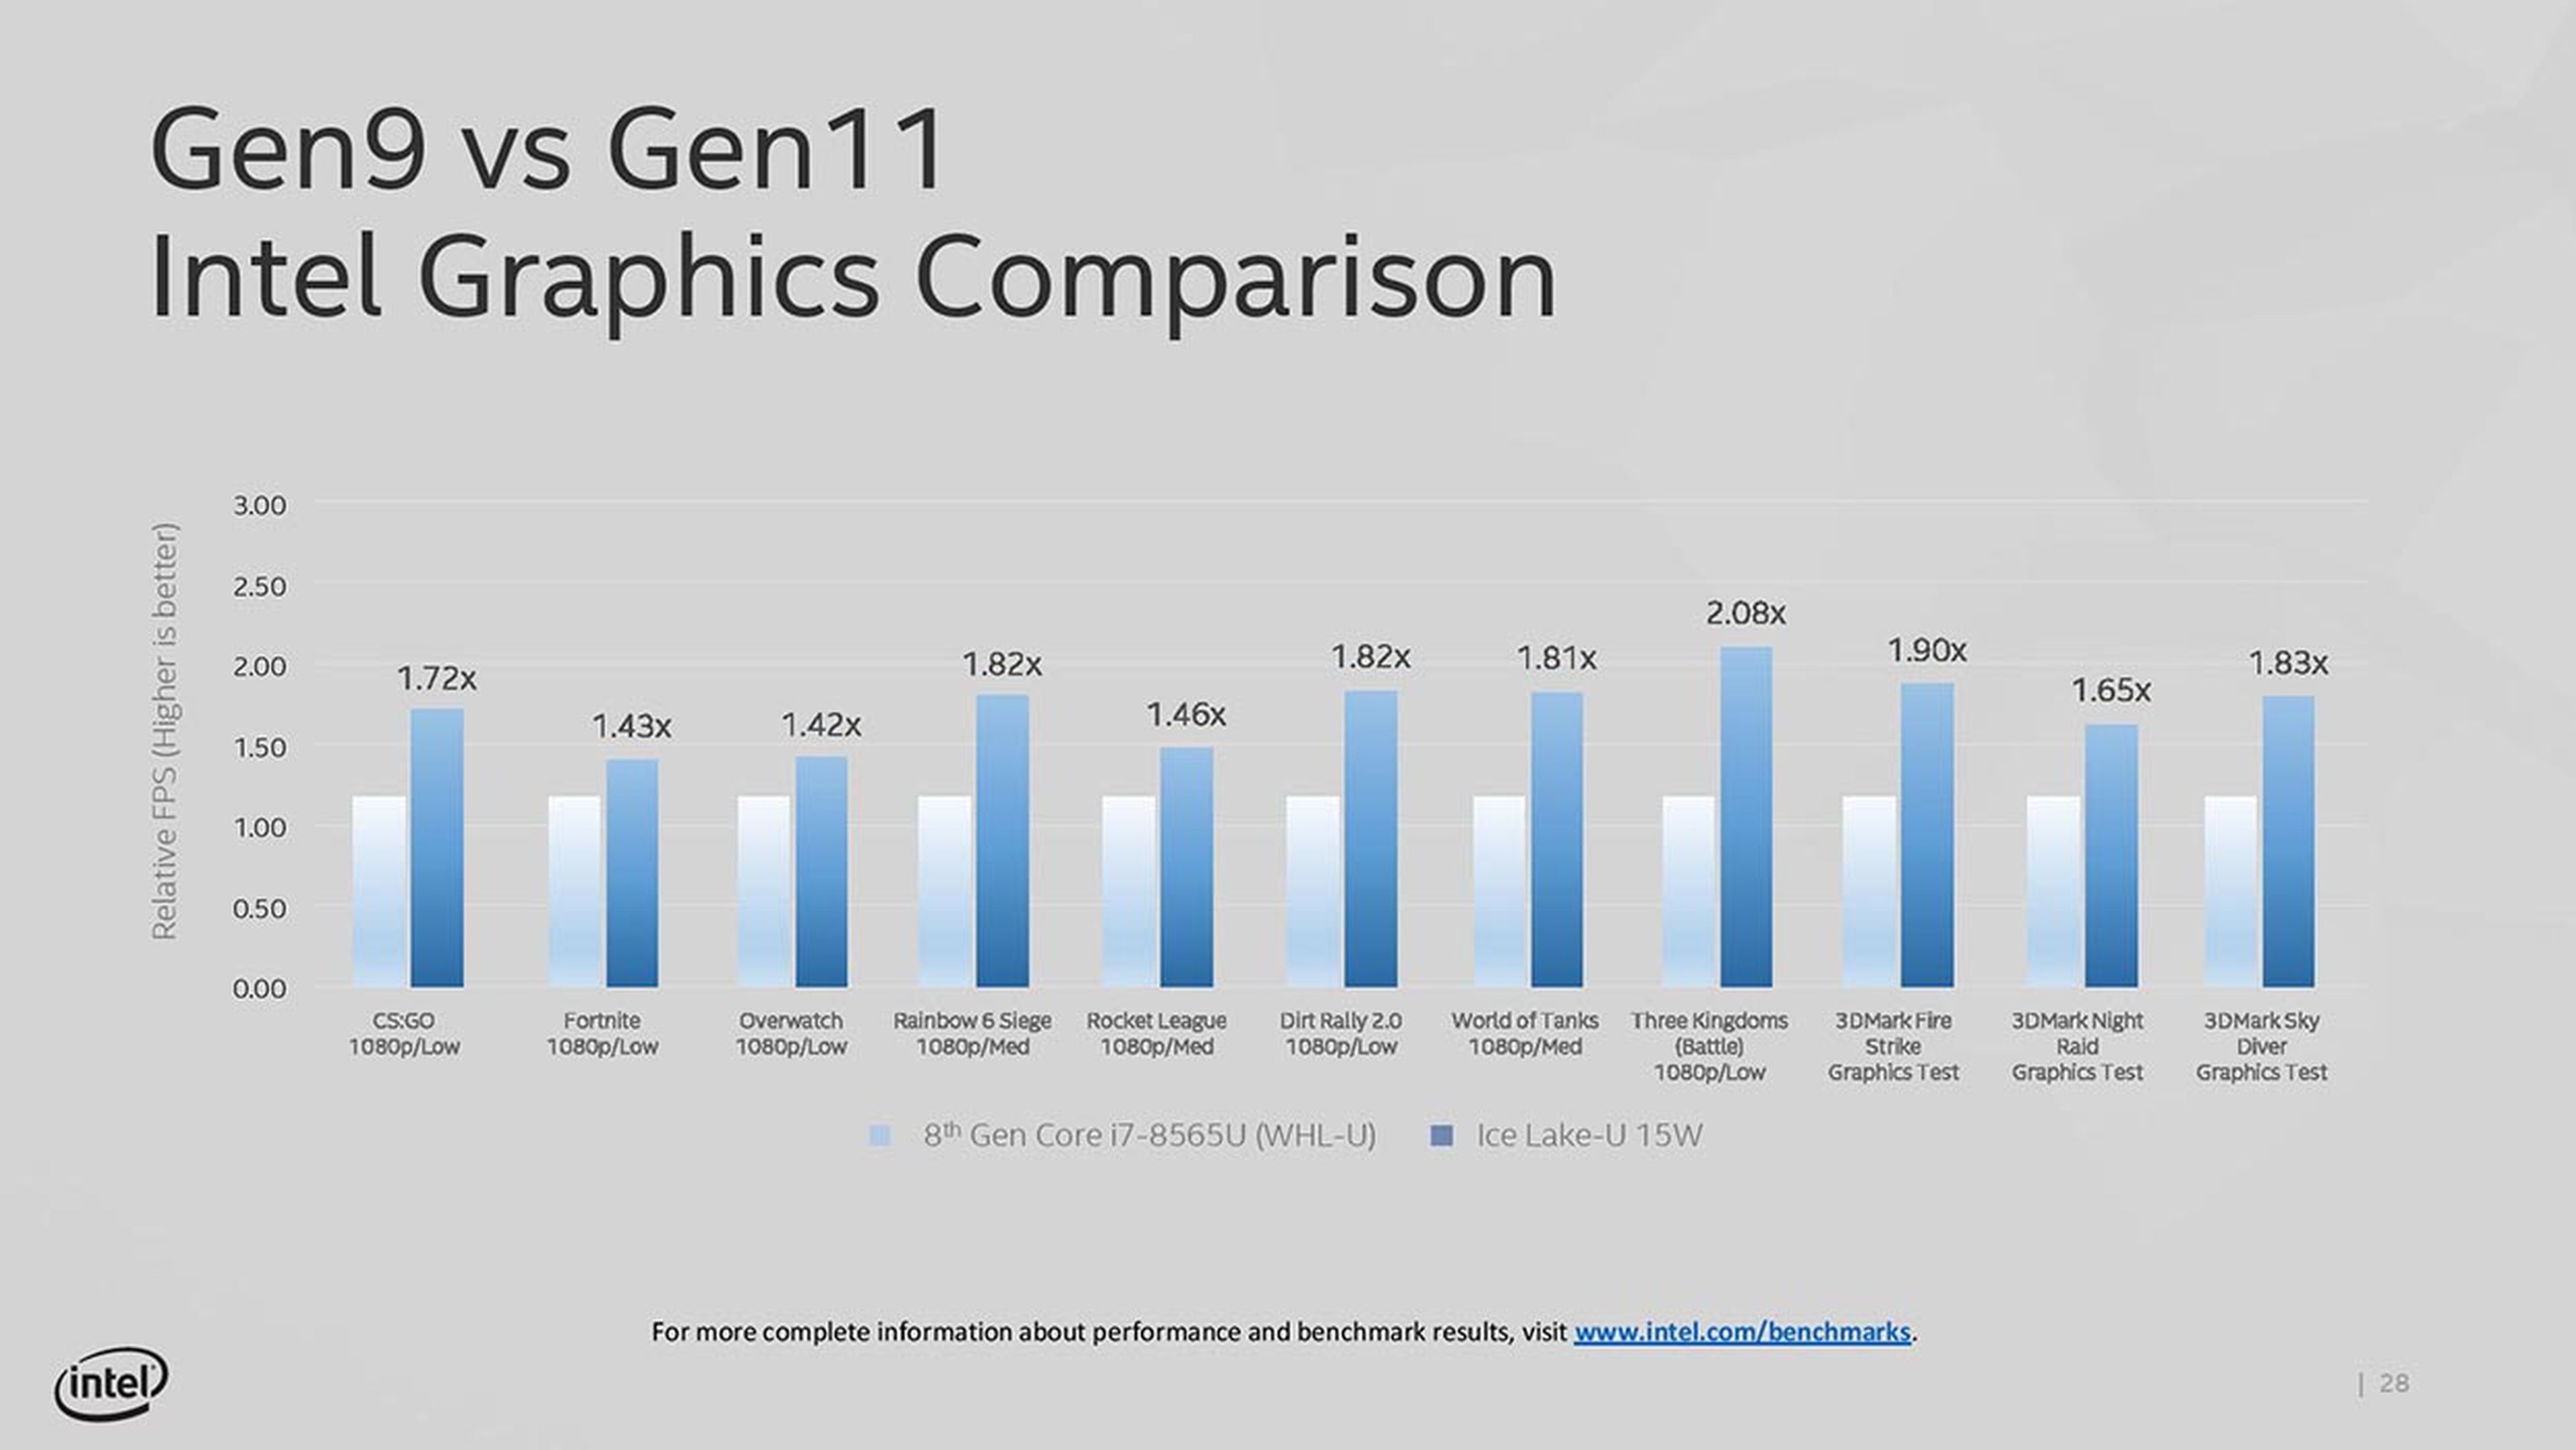 Intel Gen9 vs Gen11